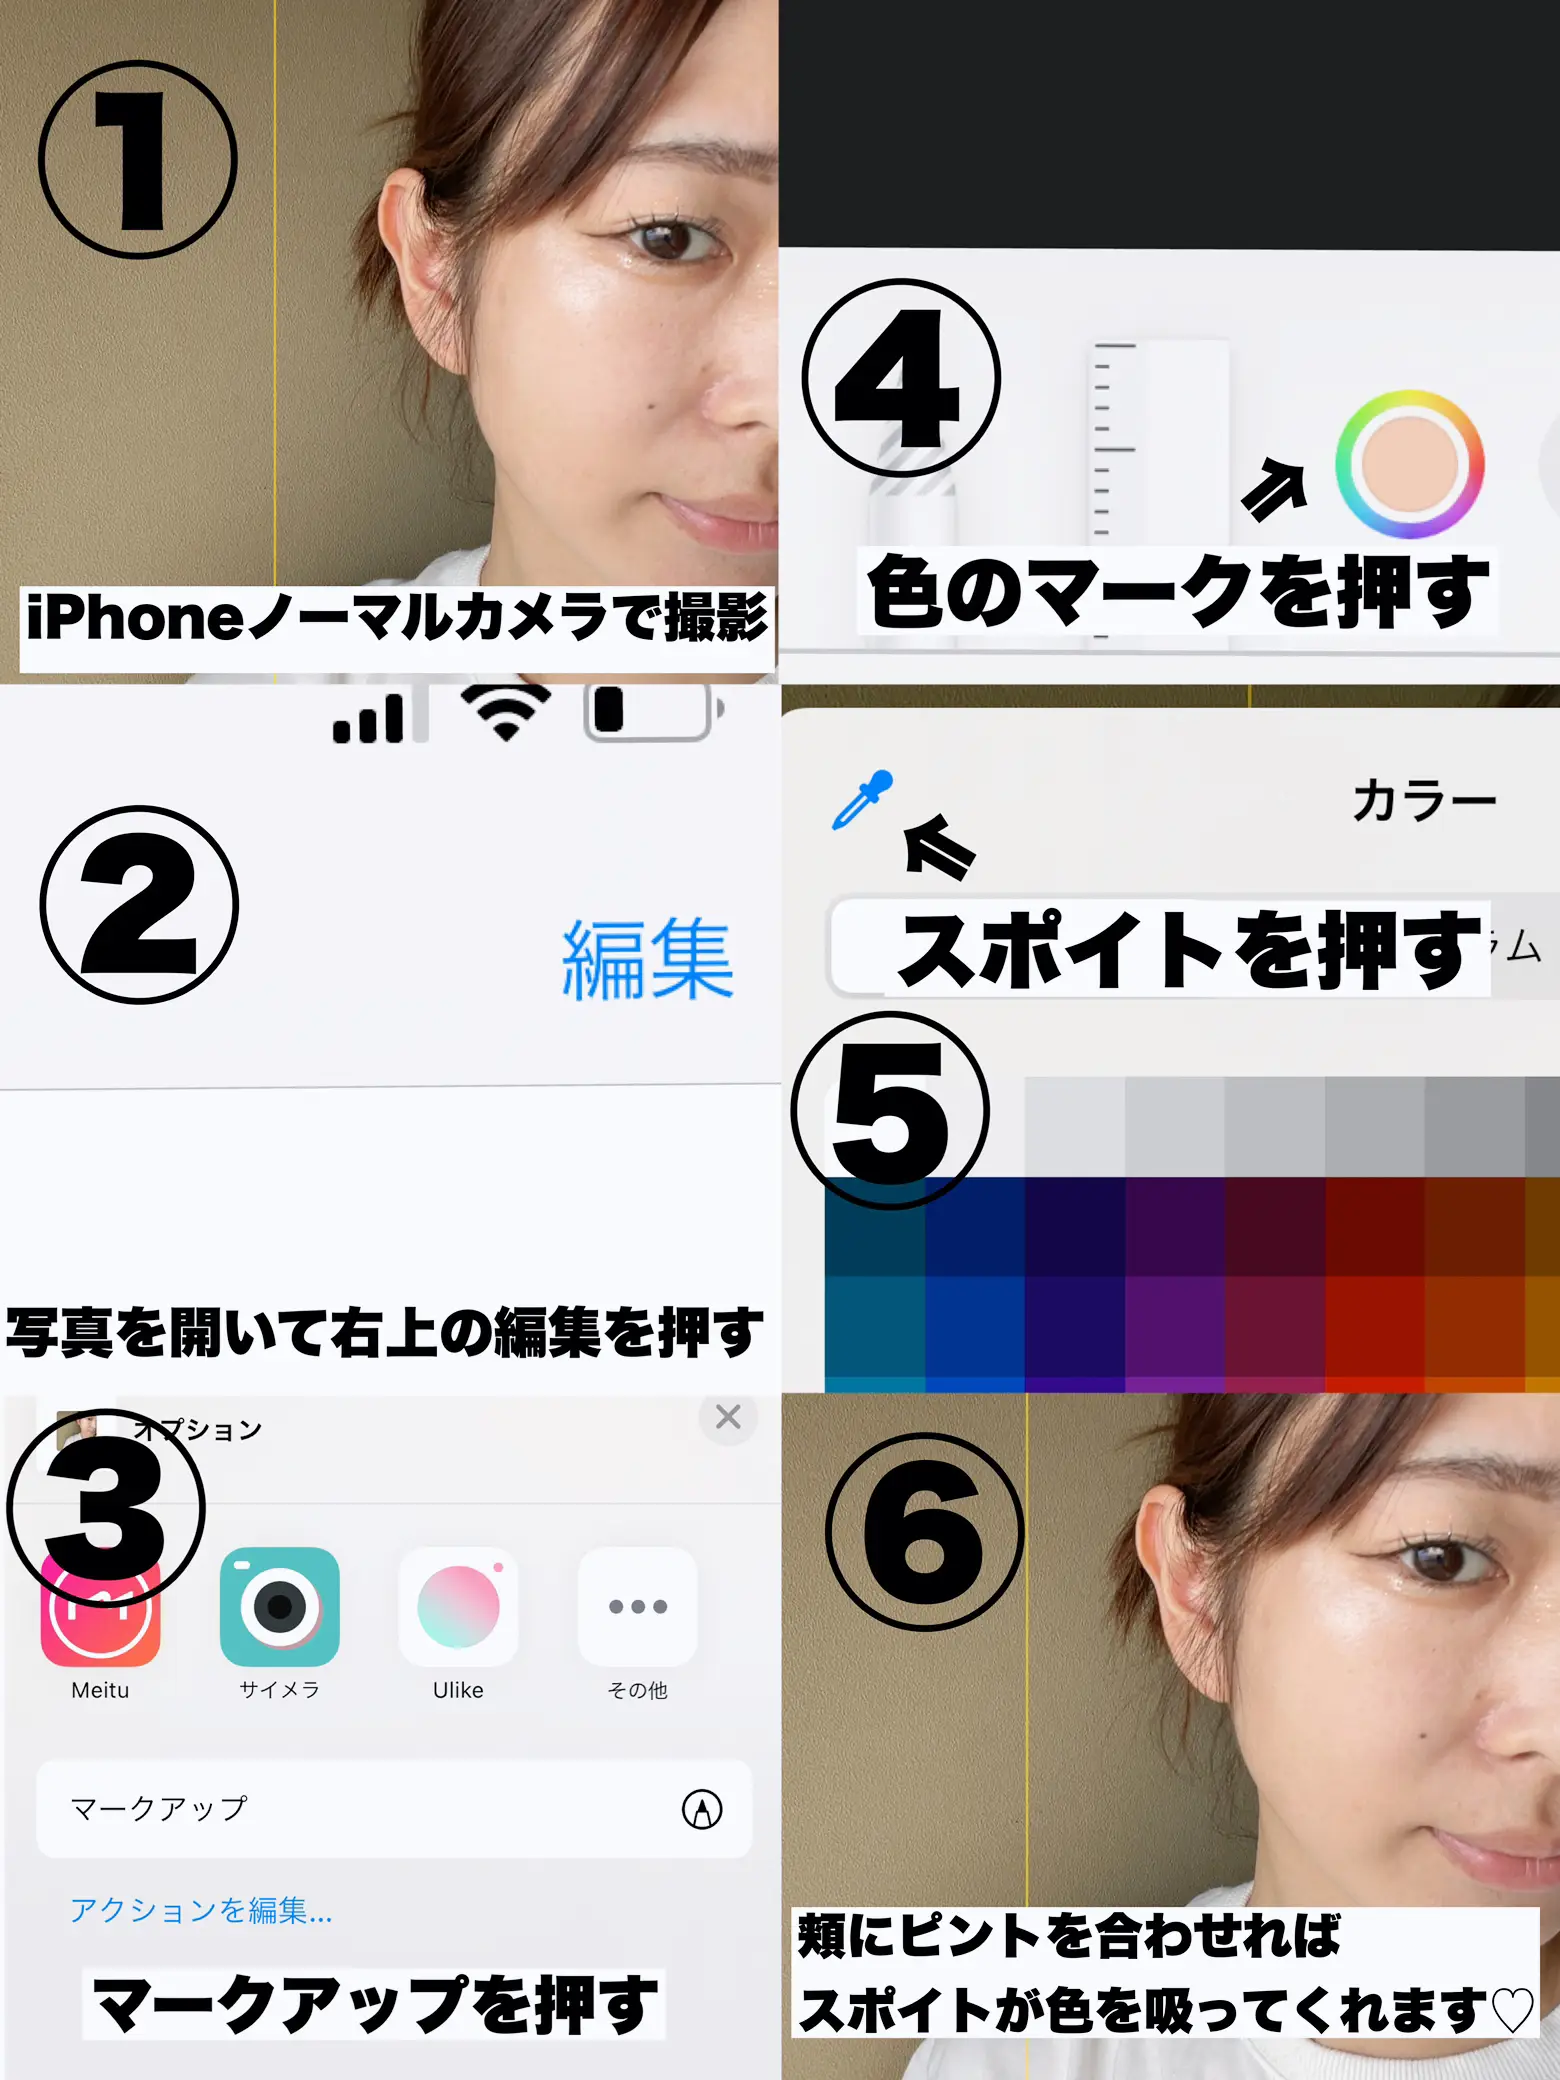 【肌色診断】iPhoneで出来る♡簡単肌色診断！の画像 (2枚目)